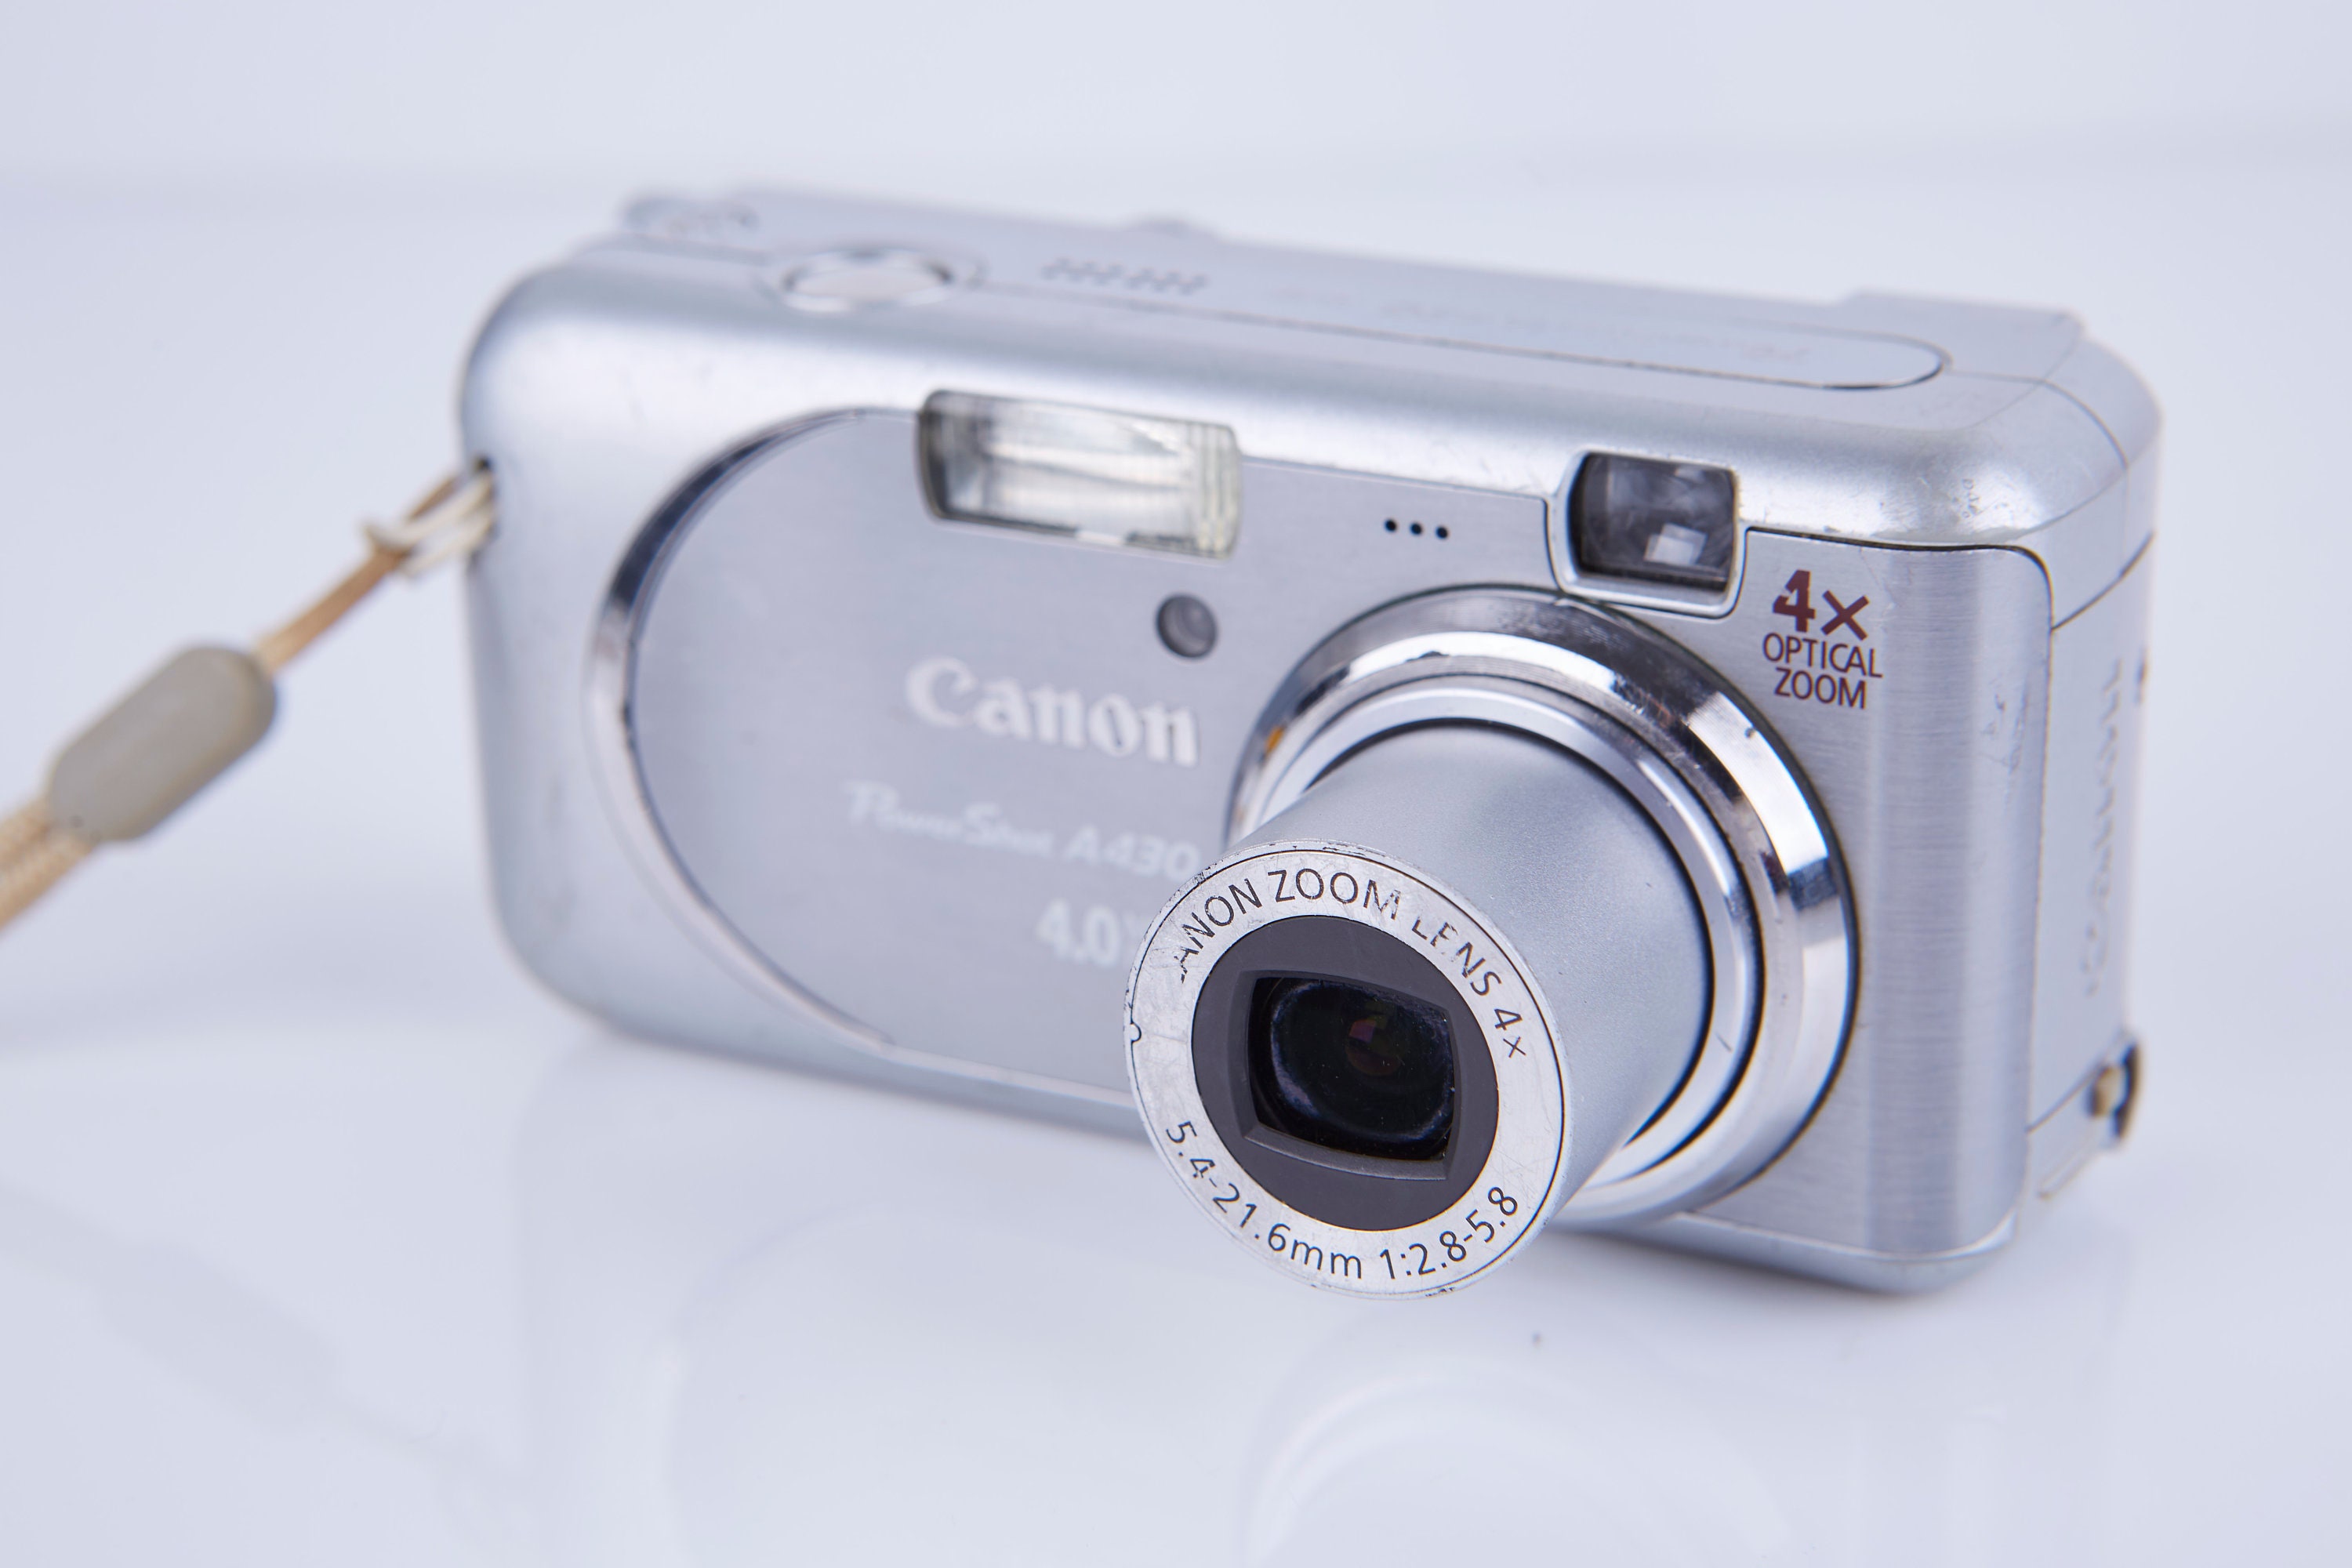 Cámara digital Canon PowerShot A430 de 4MP con zoom óptico de 4x